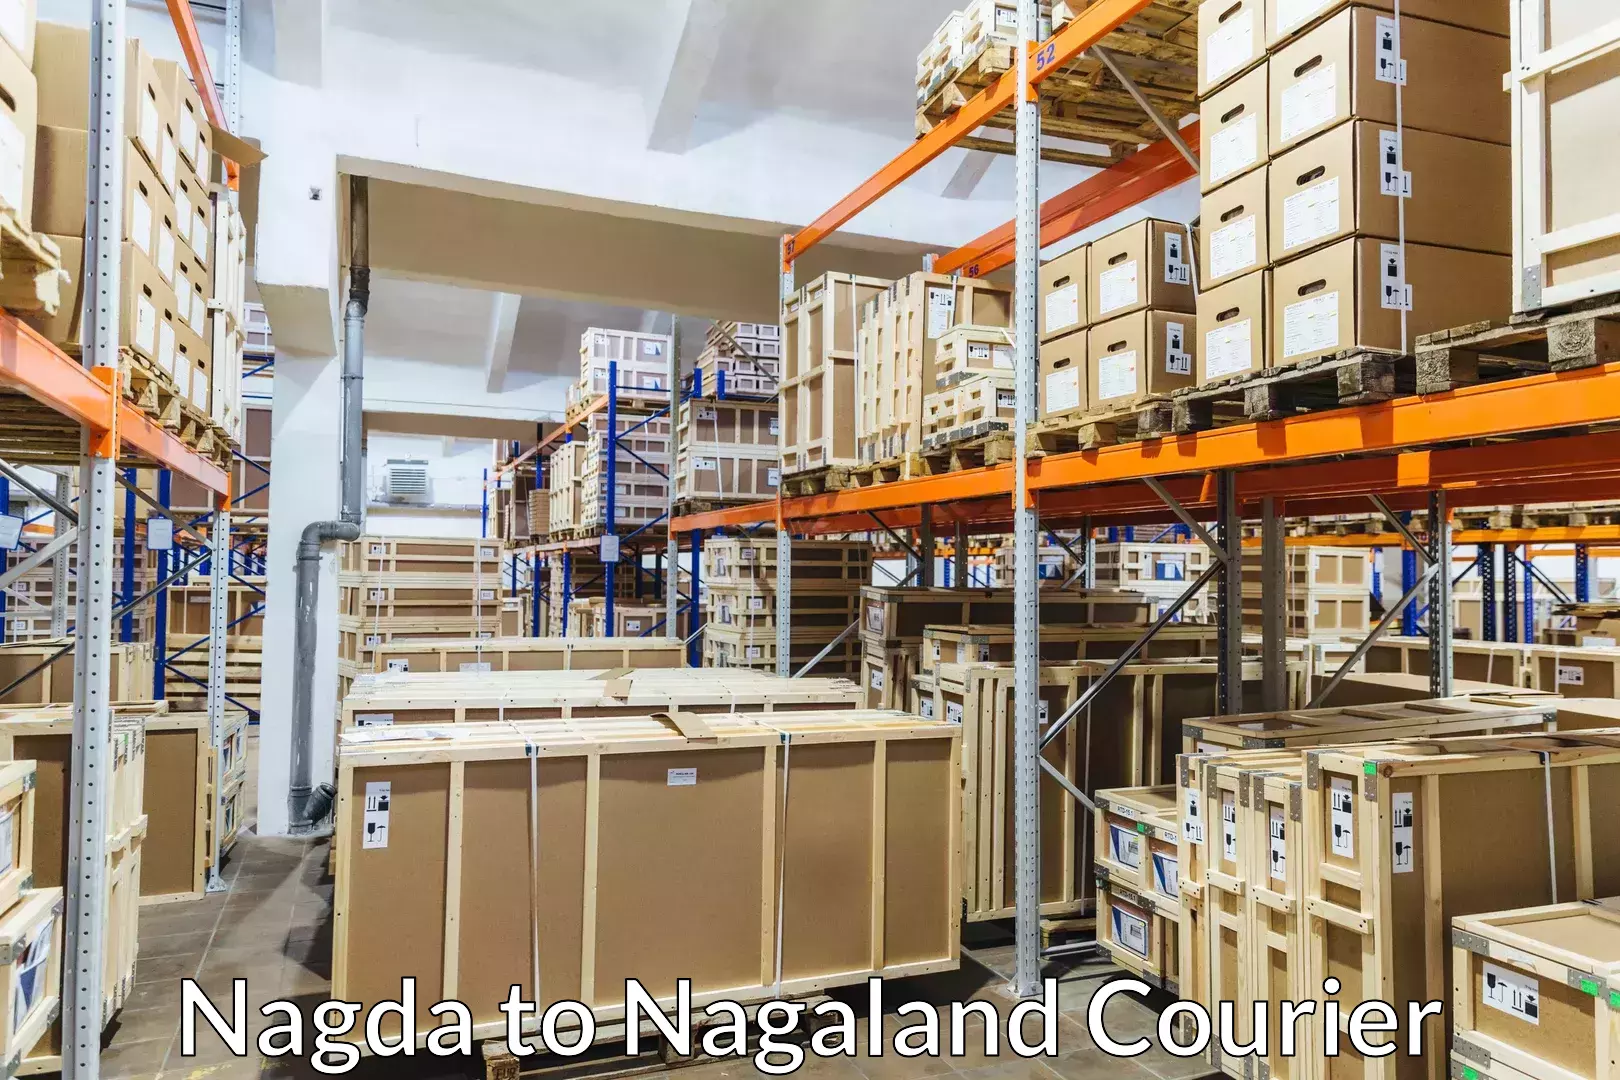 Baggage courier insights Nagda to Nagaland